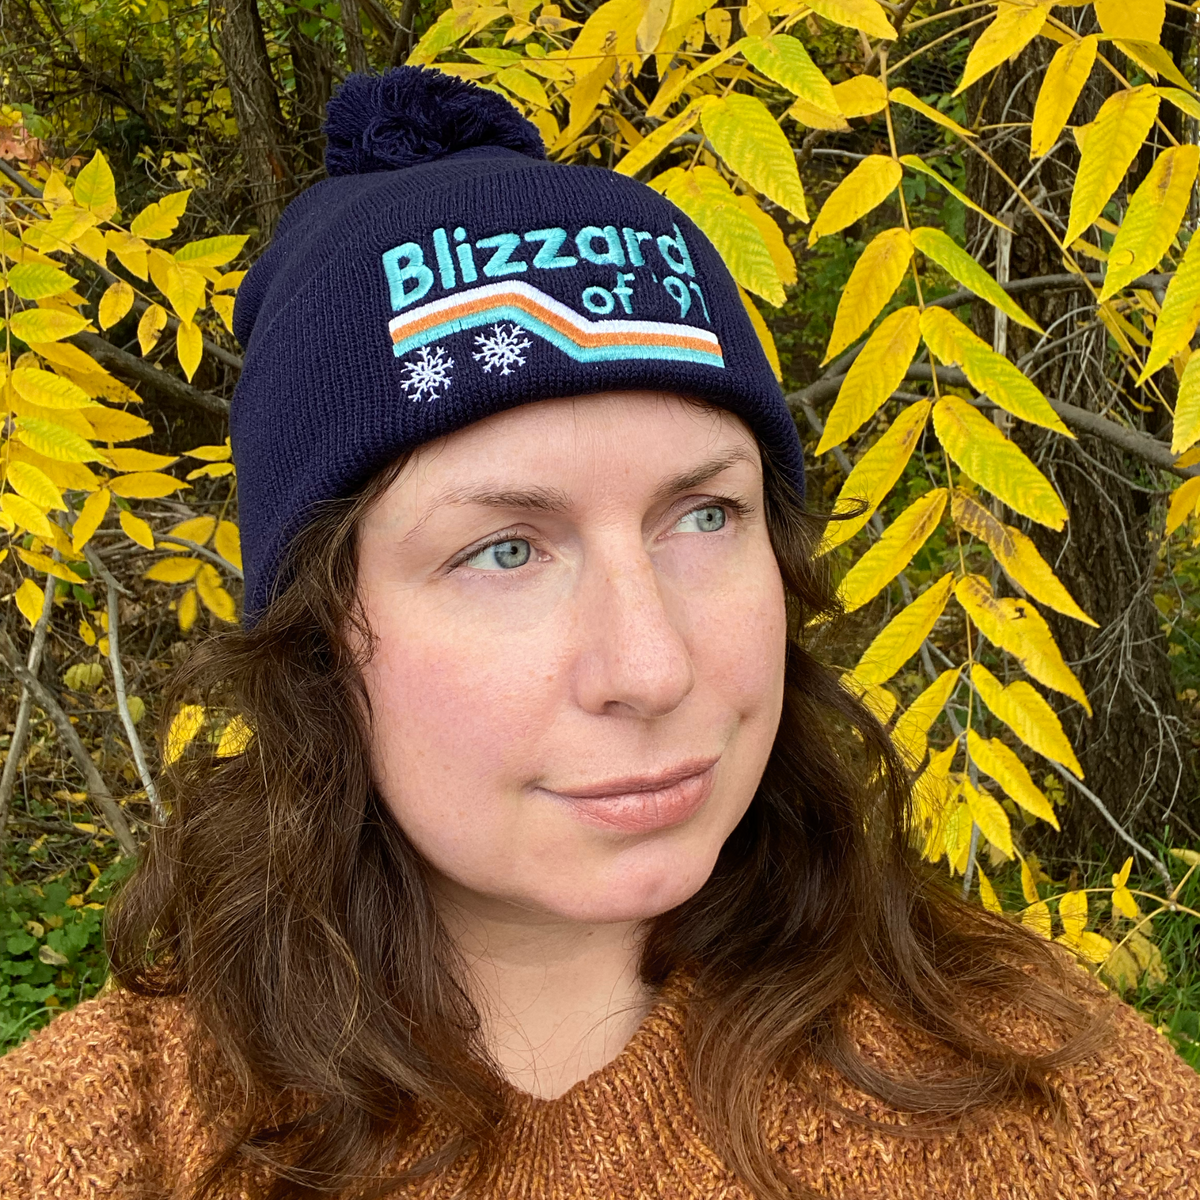 Blizzard of 91 Winter Beanie Hat